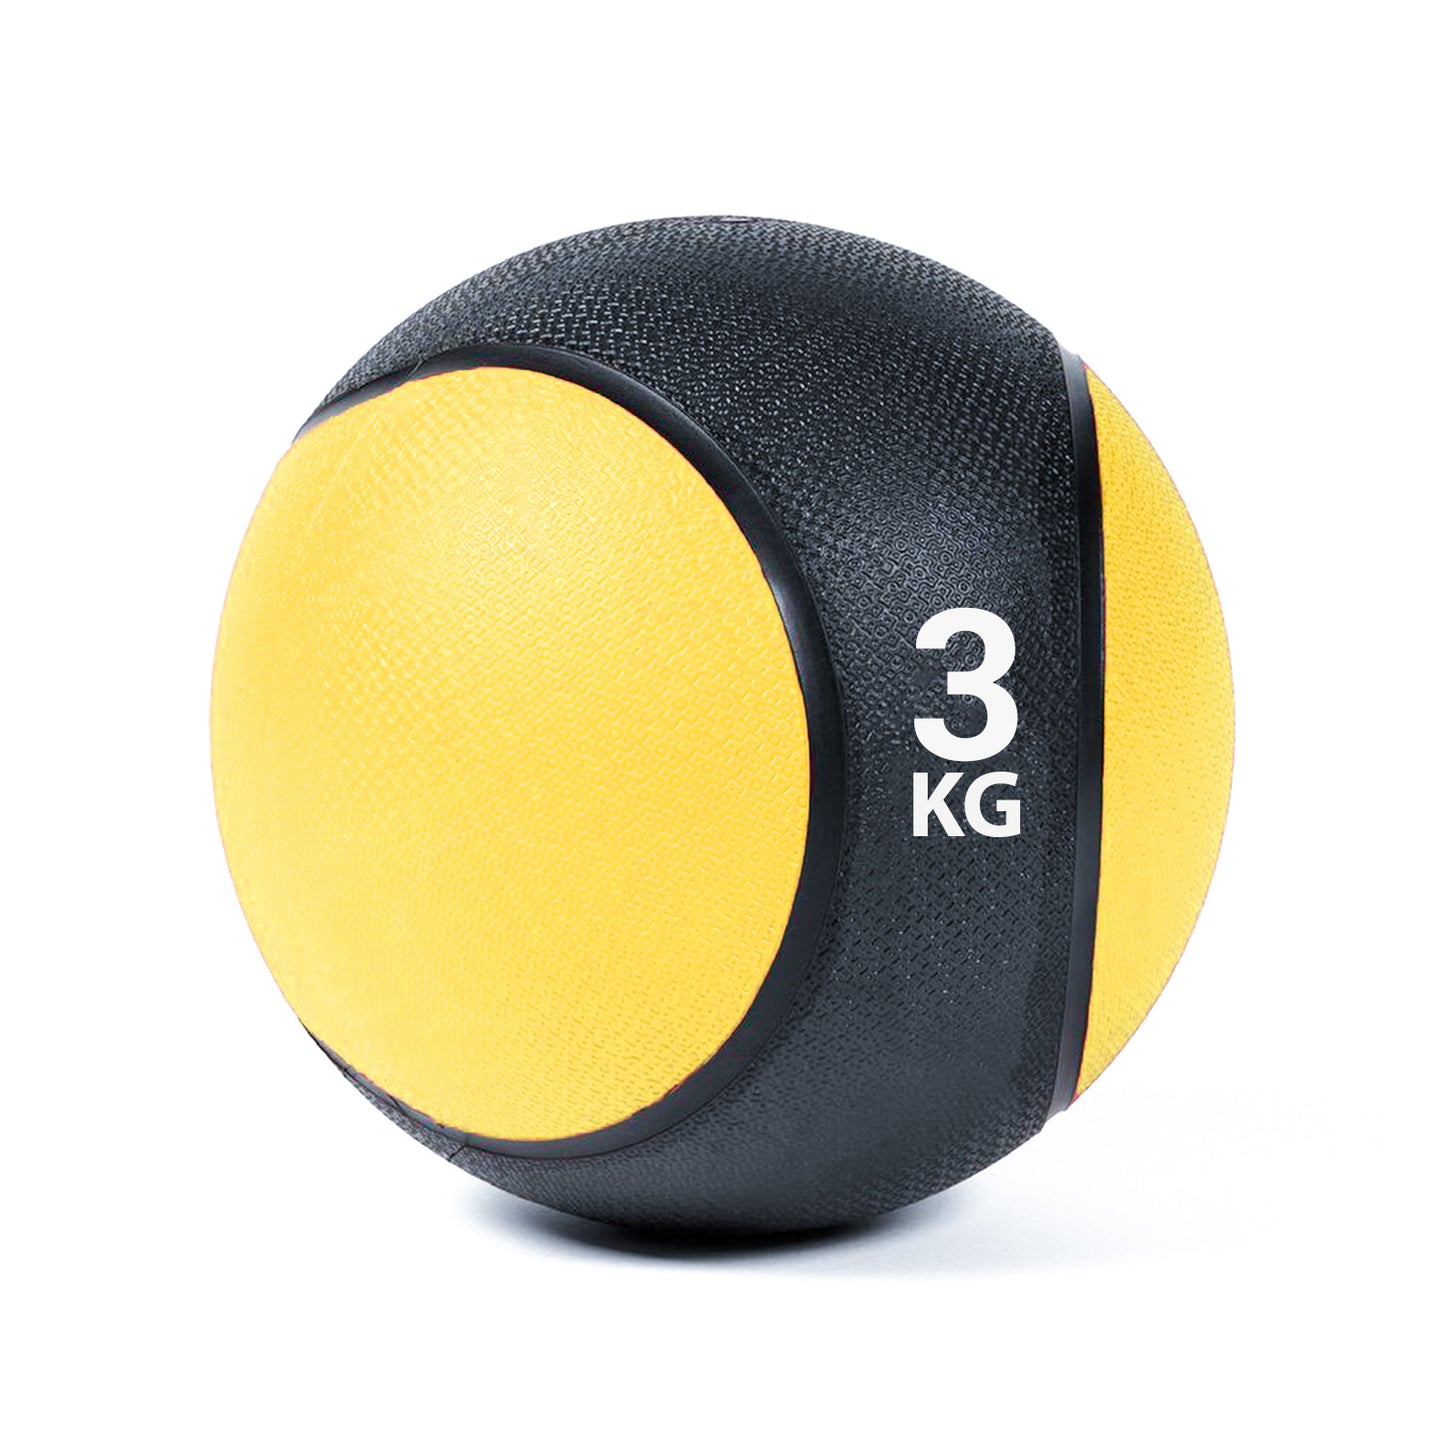 كرة طبية من المطاط لاعادة التأهيل و اللياقة البدنية - لون اسود و اصفر - وزن 3 كيلو جرام